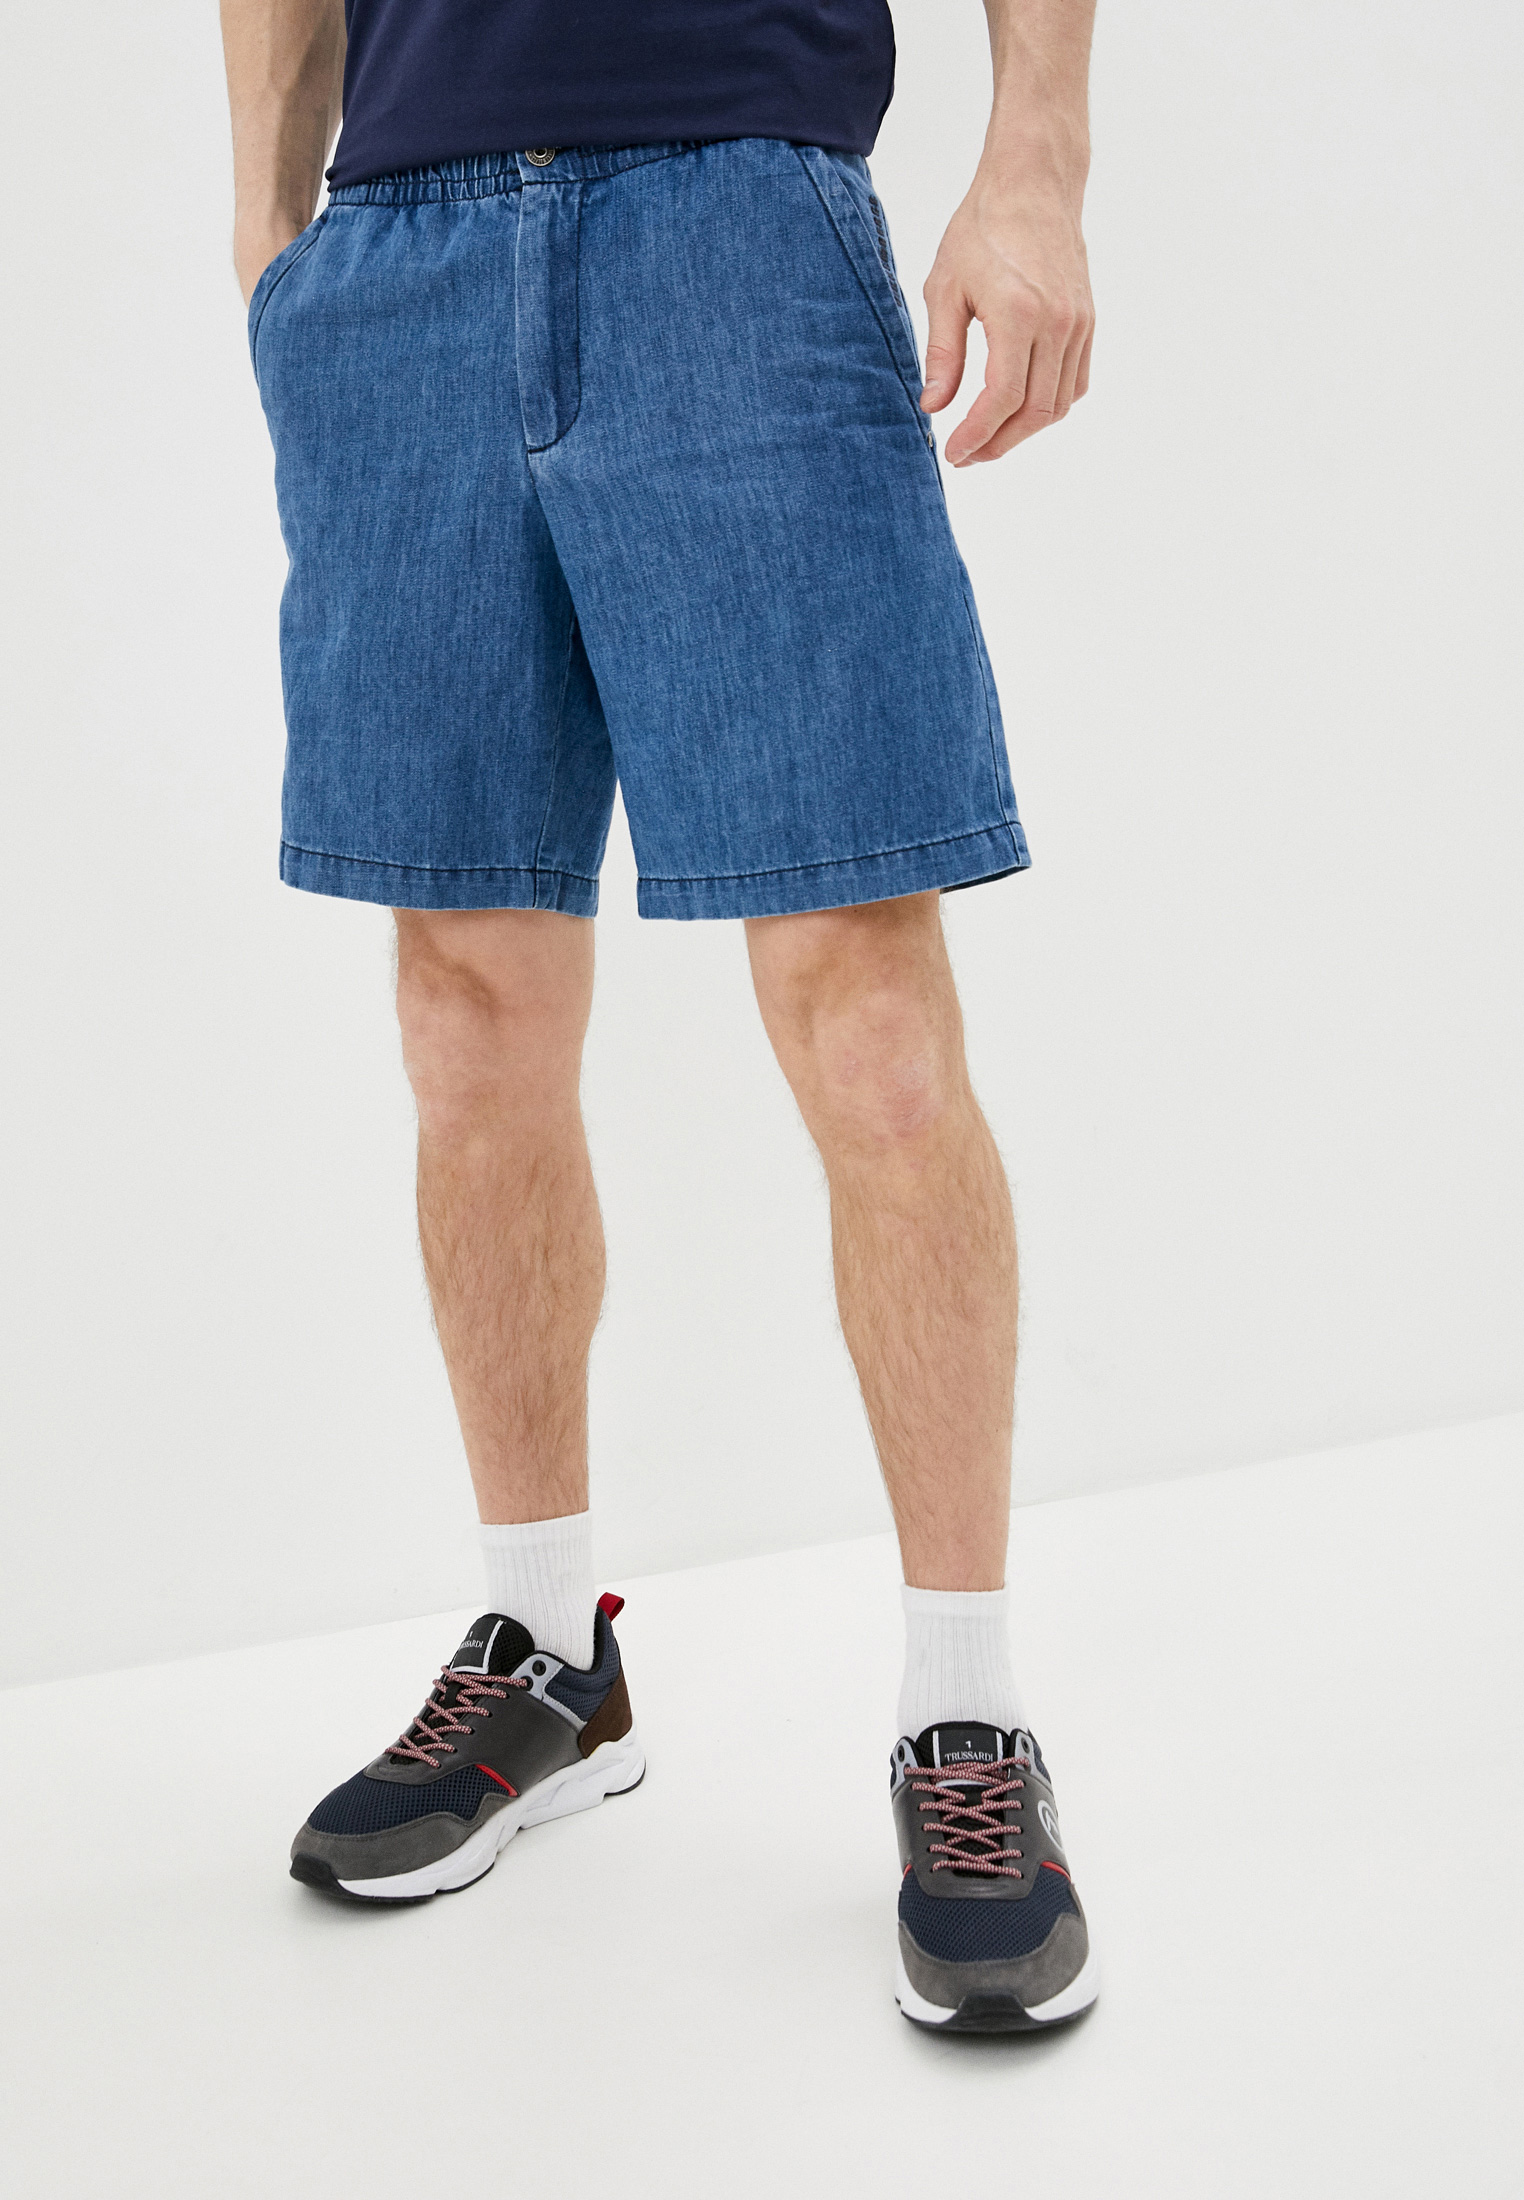 Мужские джинсовые шорты Bikkembergs (Биккембергс) C O 015 01 T 093A: изображение 1